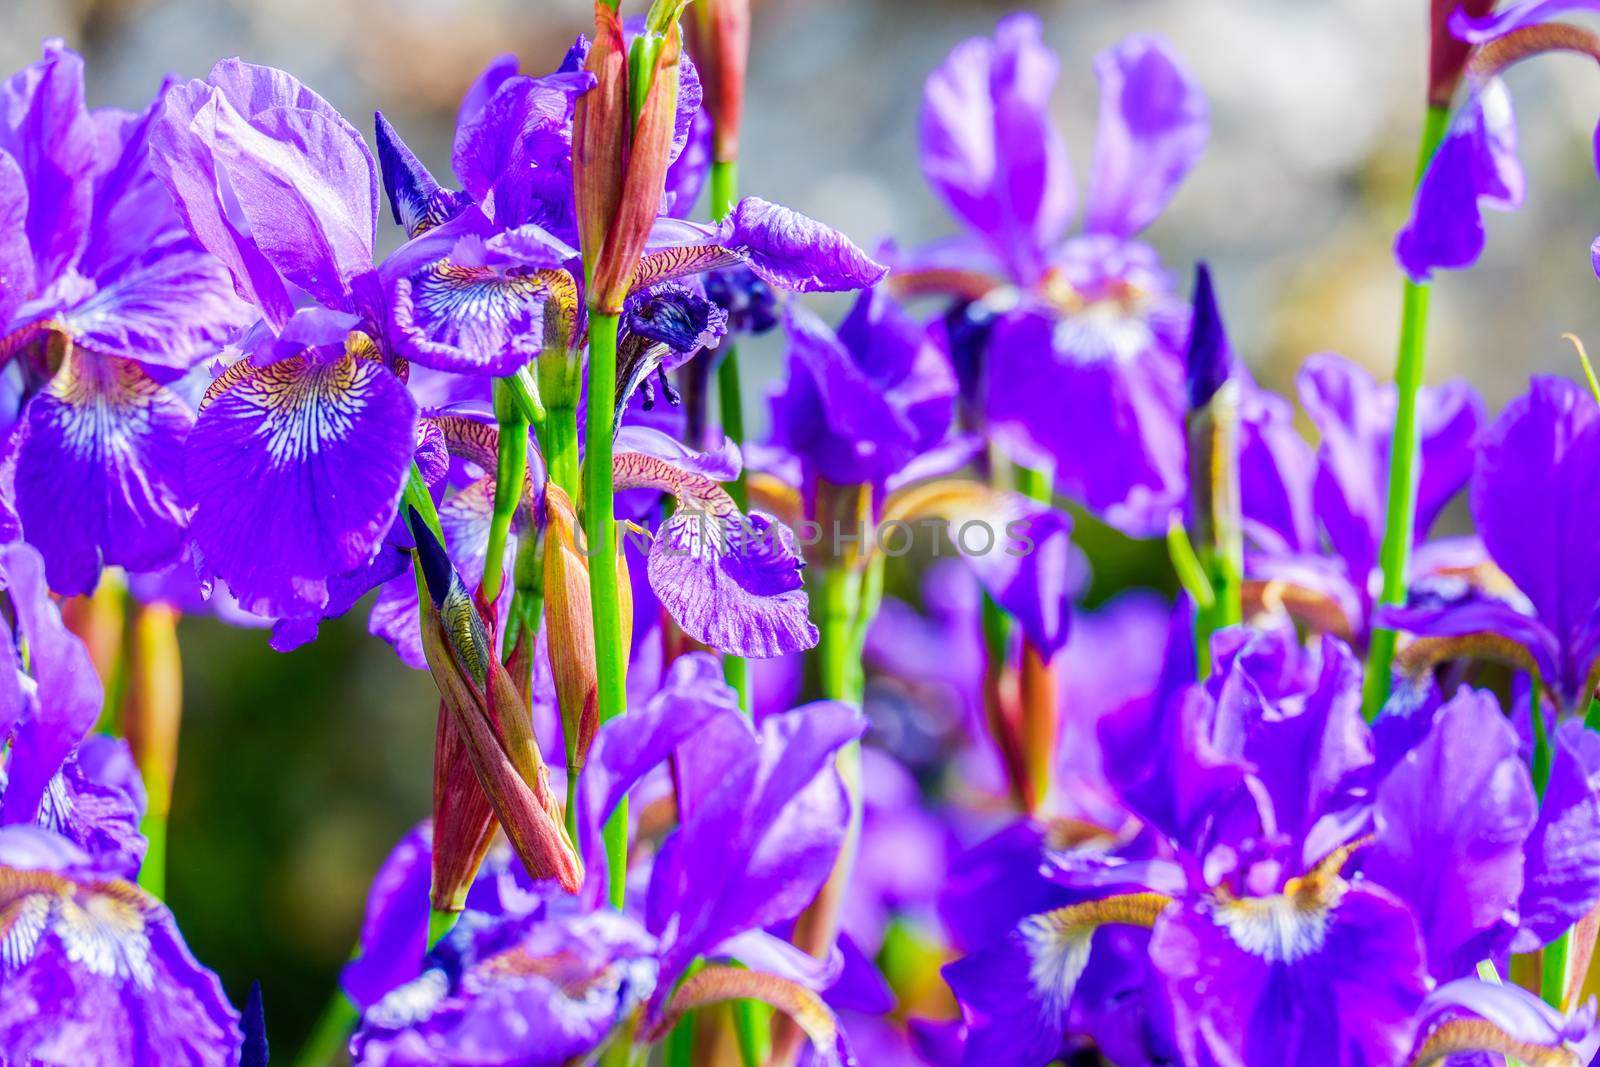 iris flower close up a of group of iris flowers in a garden